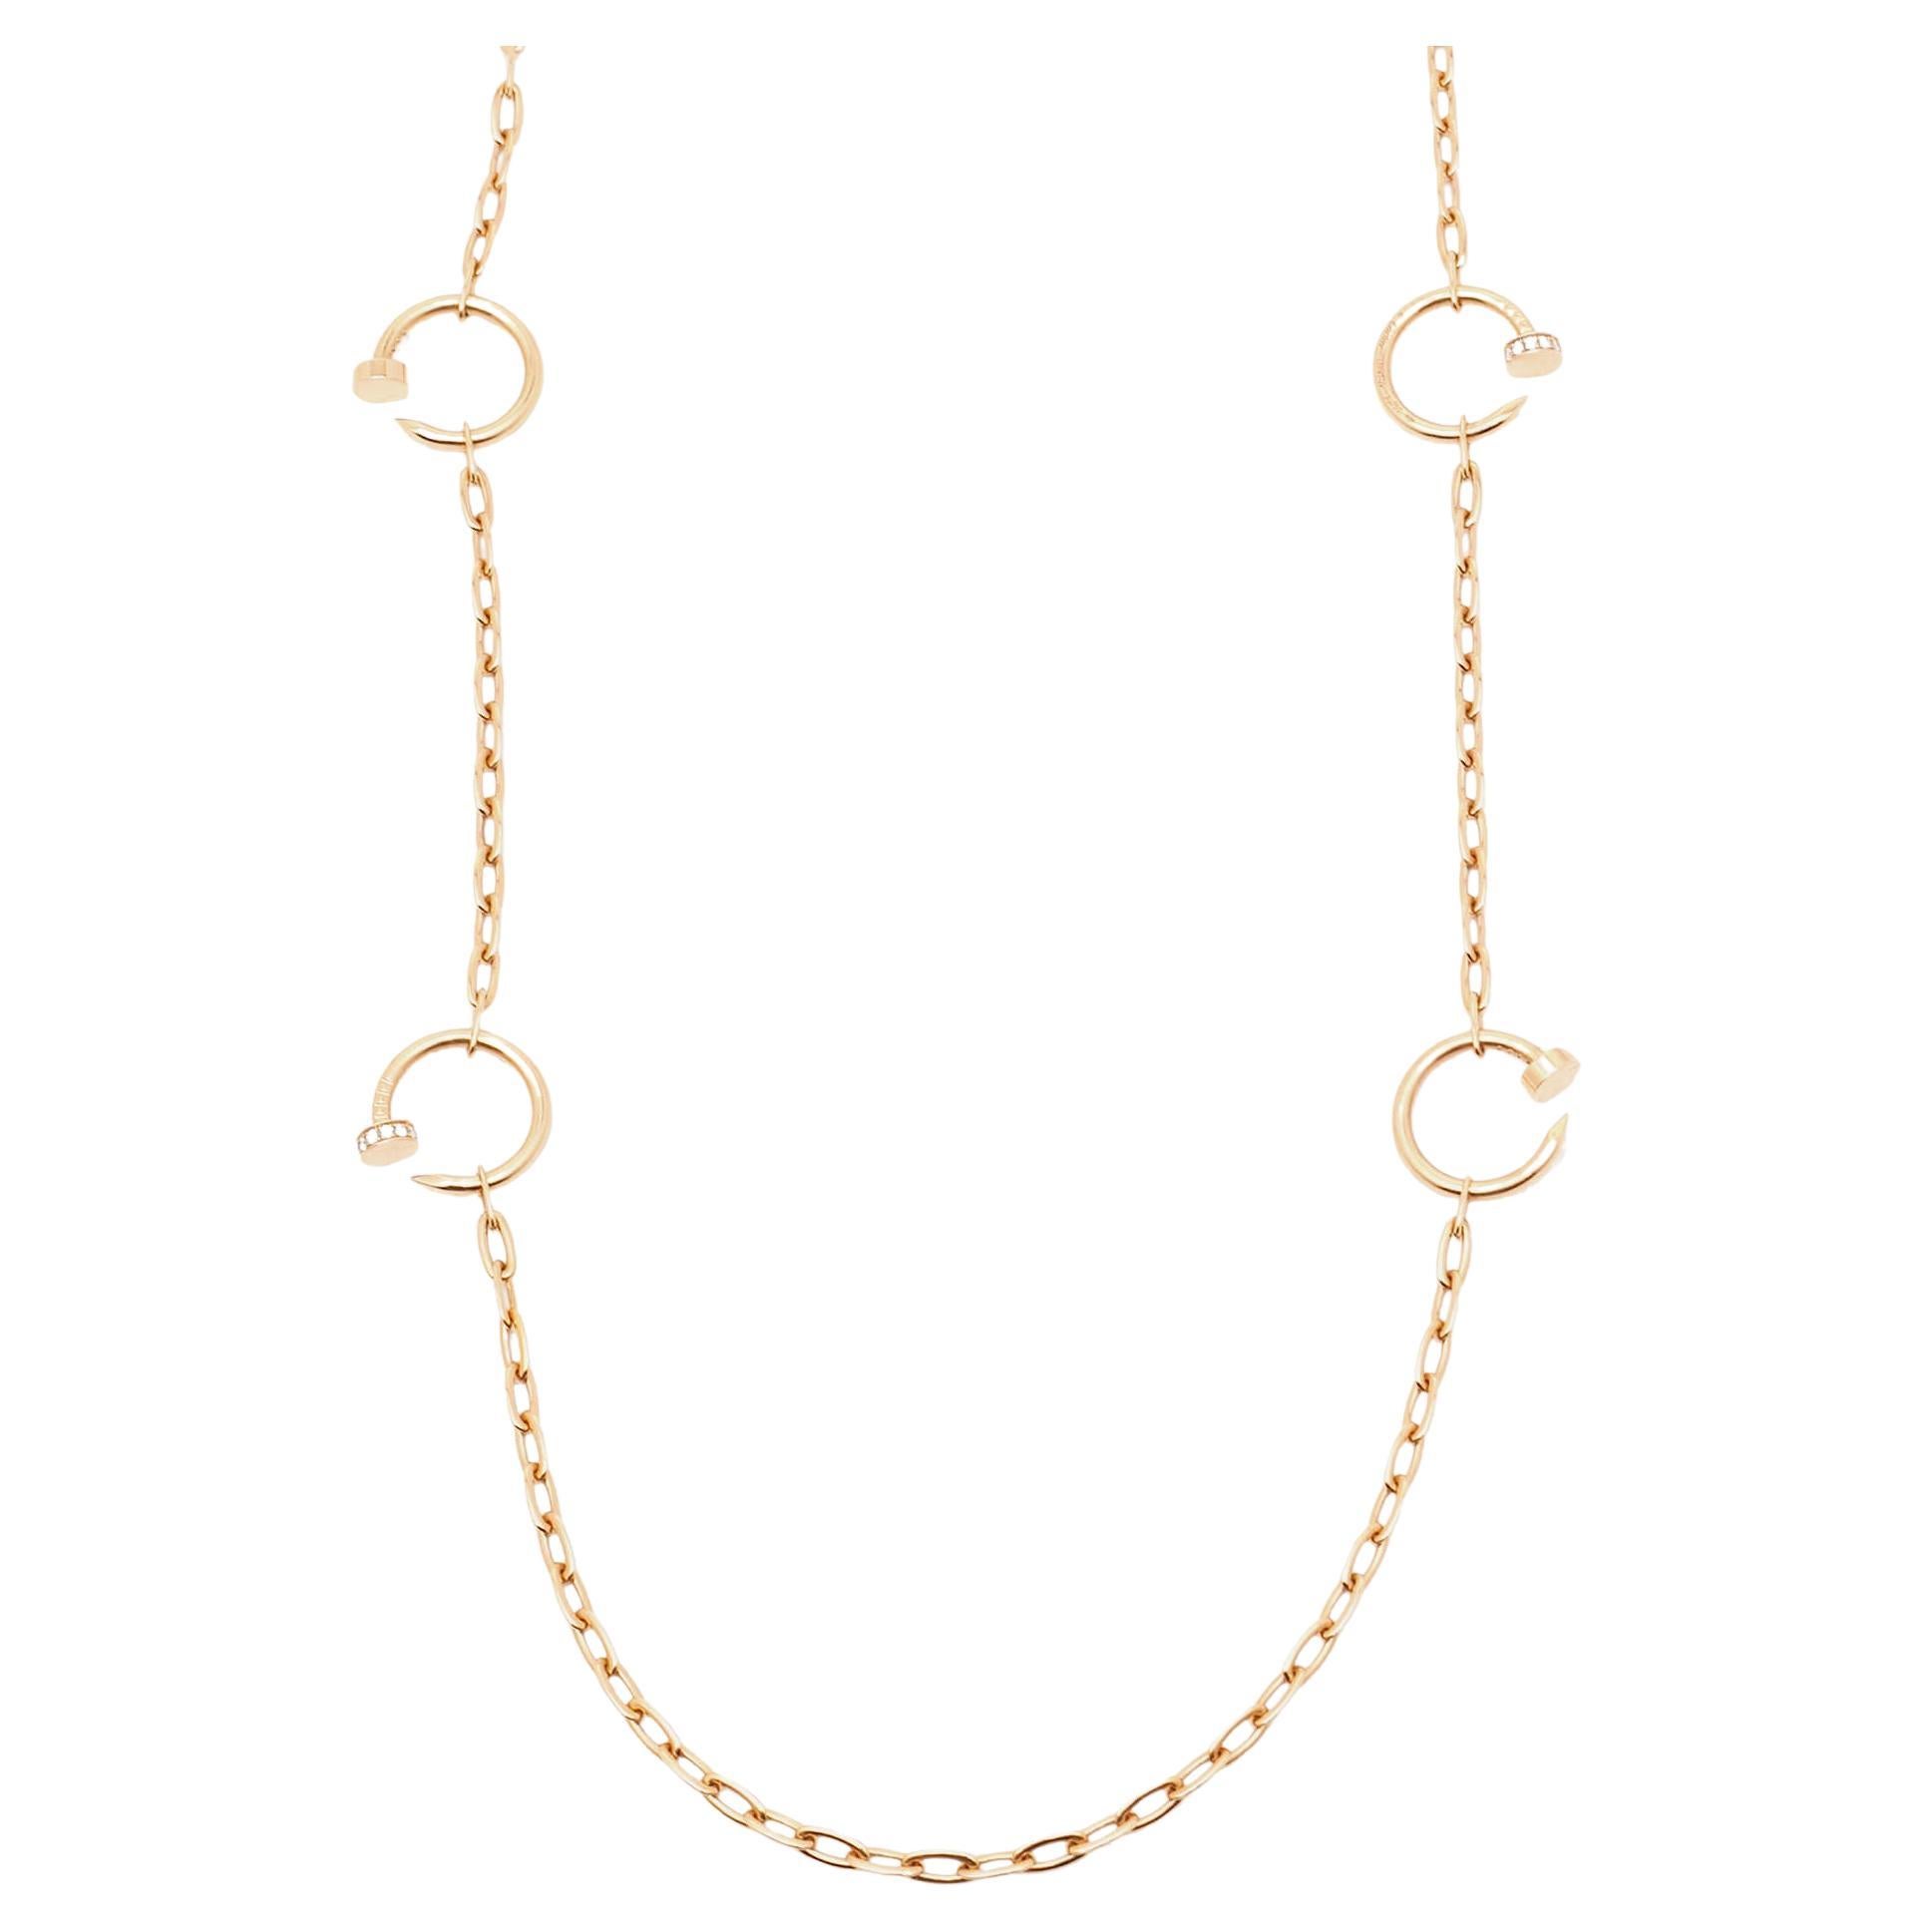 Cartier Juste Un Clou Diamonds 18k Rose Gold 6 Motif Long Necklace